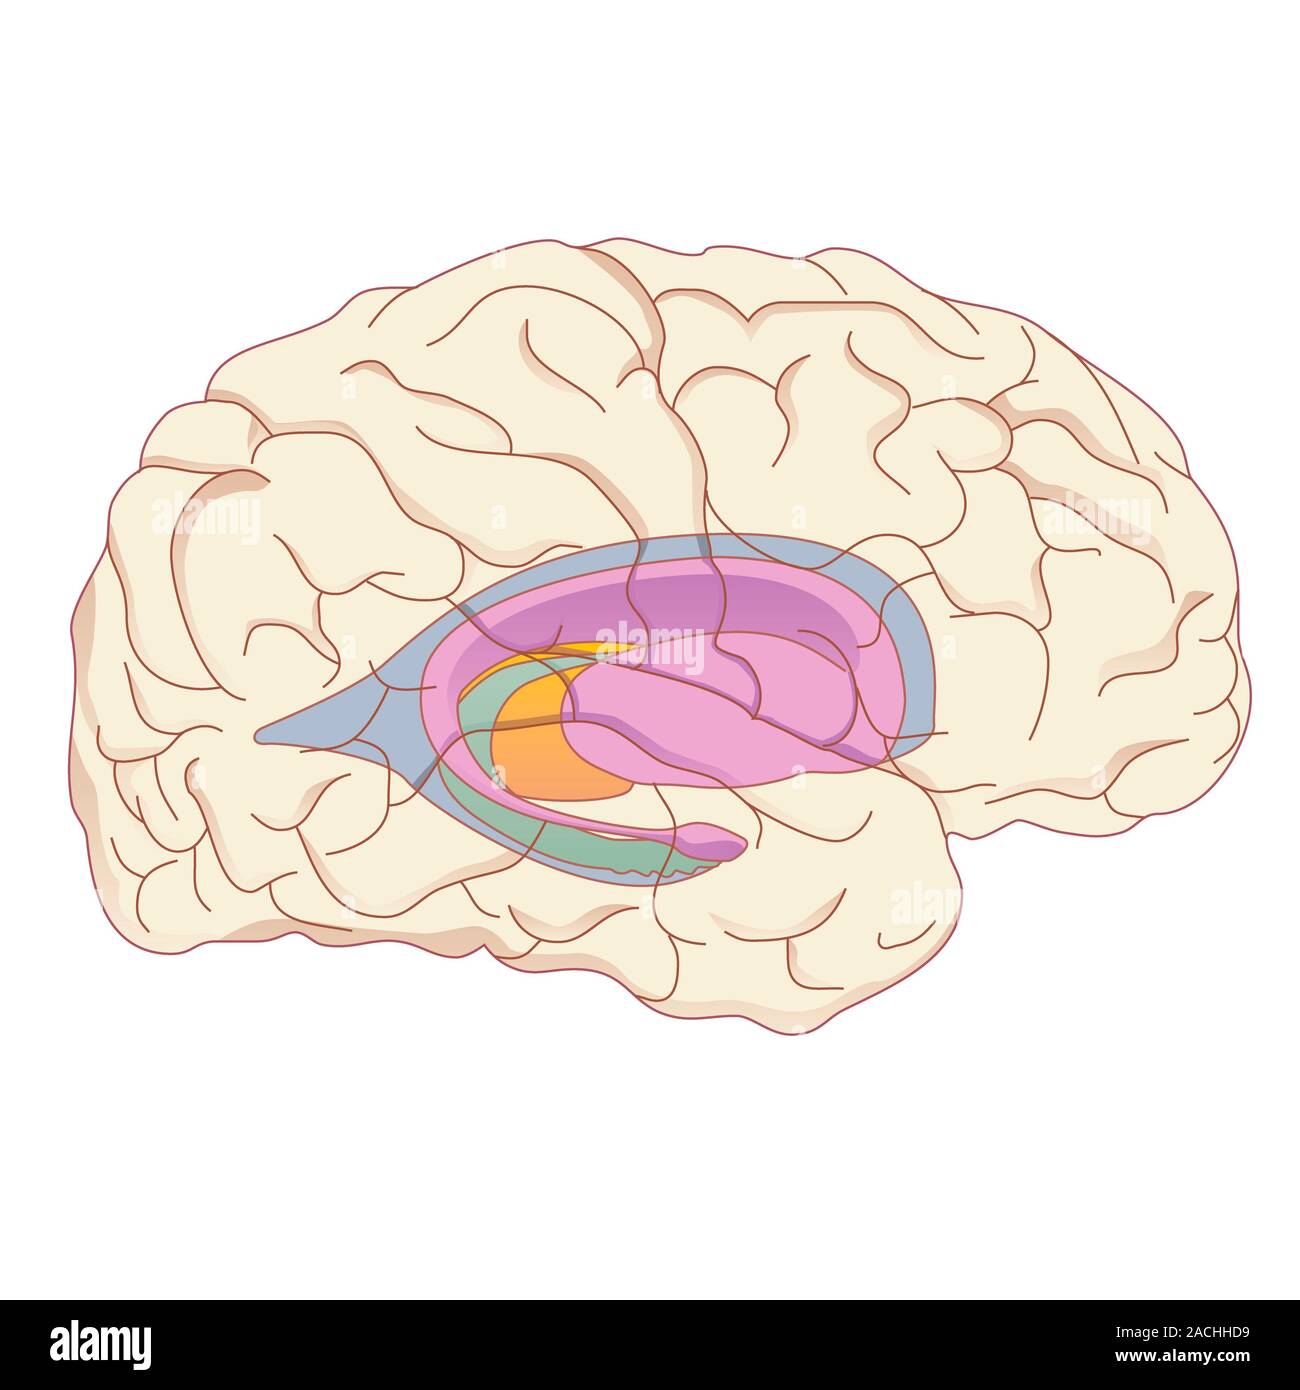 Самый древний отдел мозга. Гипоталамус таламус гиппокамп. Базальные ганглии. Амигдала базальные ганглии. Полосатое тело мозга.